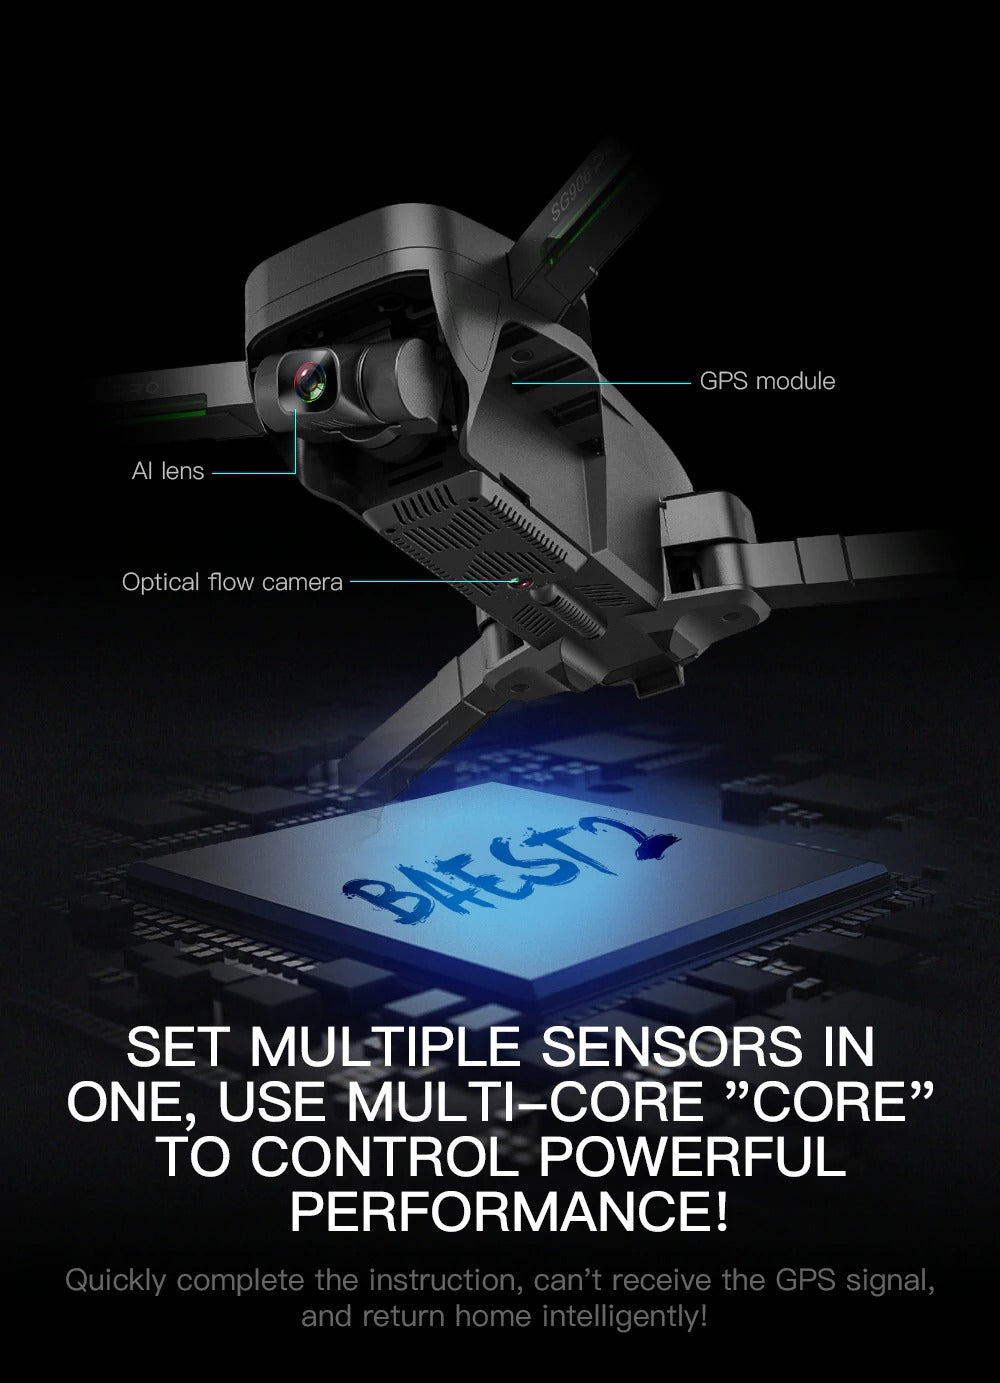 SG906 Pro Beast 2 multisensors